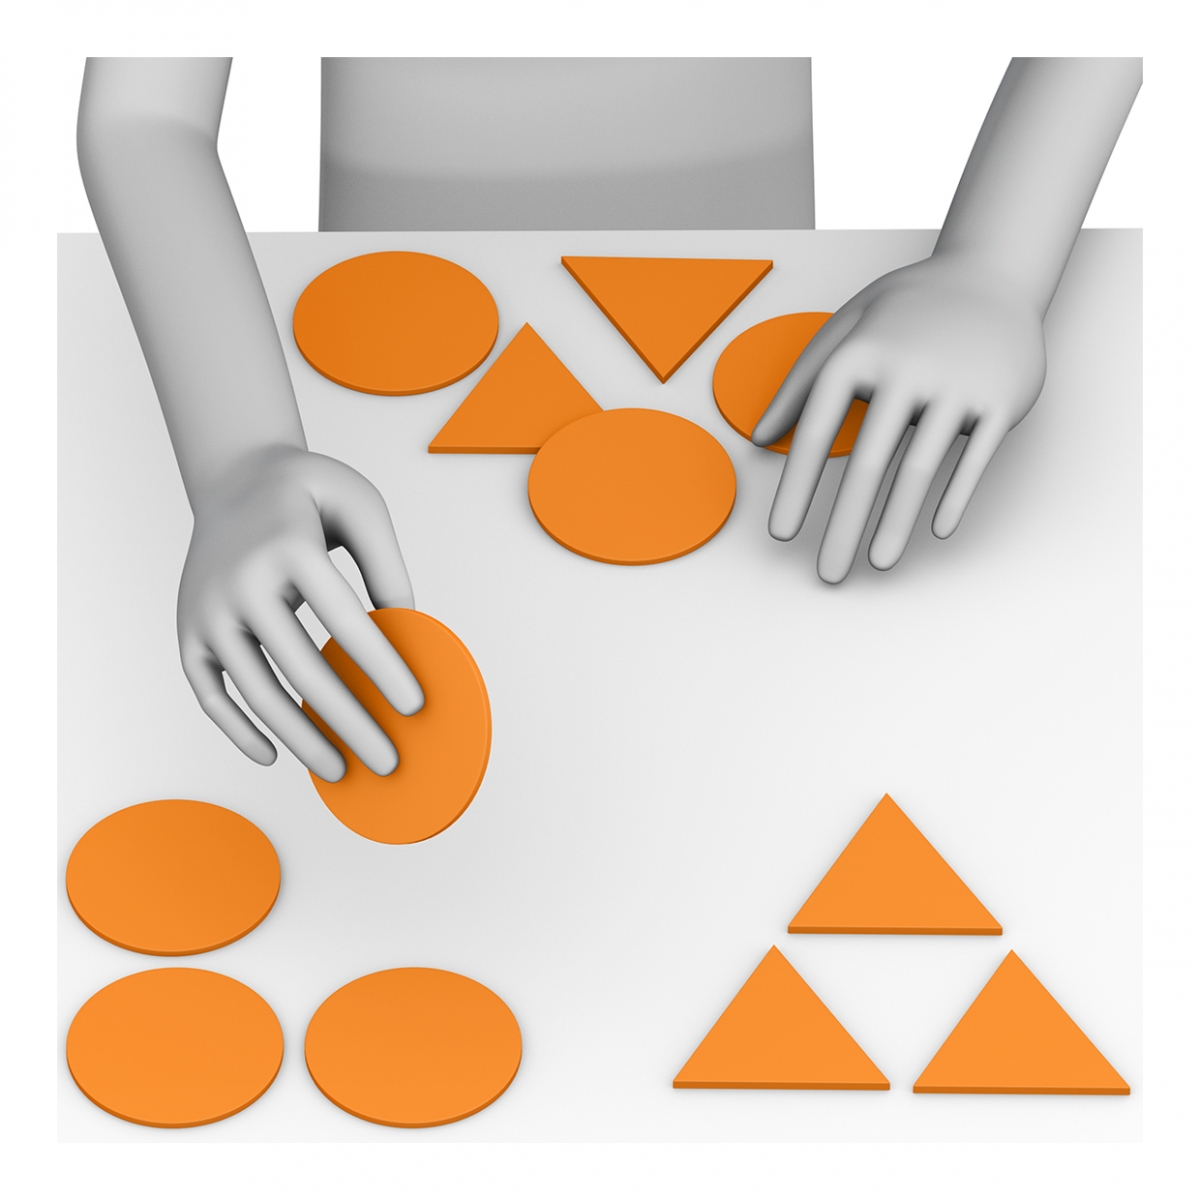 Imagen en la que se ve unas manos clasificando objetos por sus formas